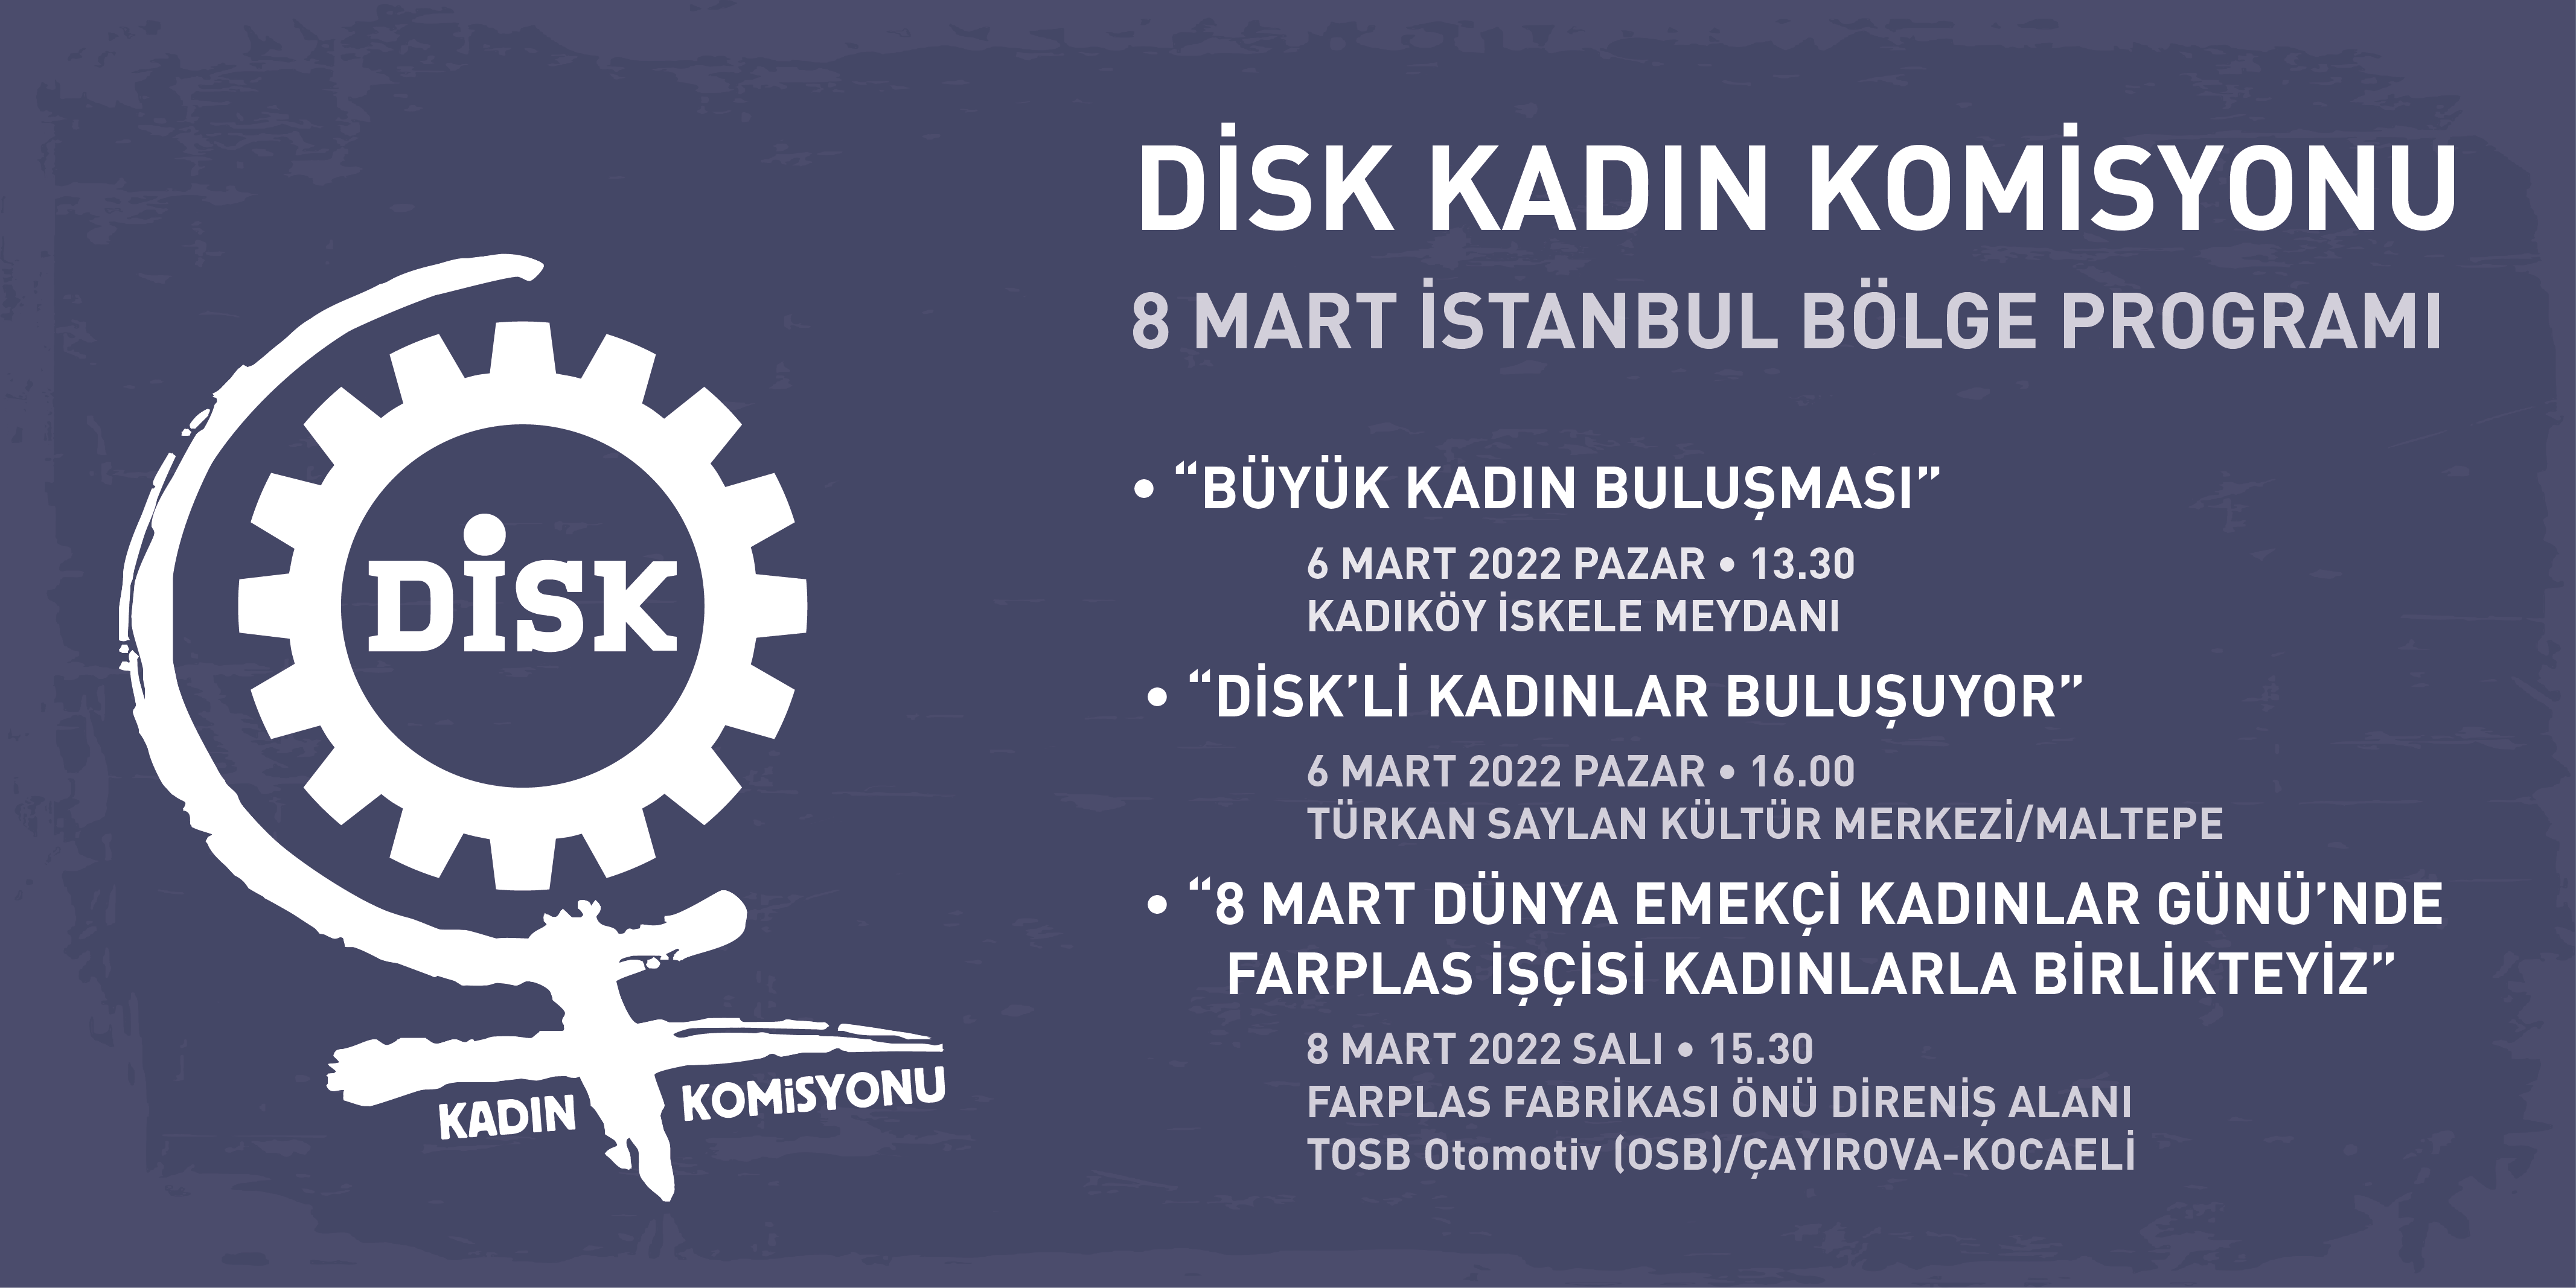 8 Mart İstanbul Bölge Programı açıklandı